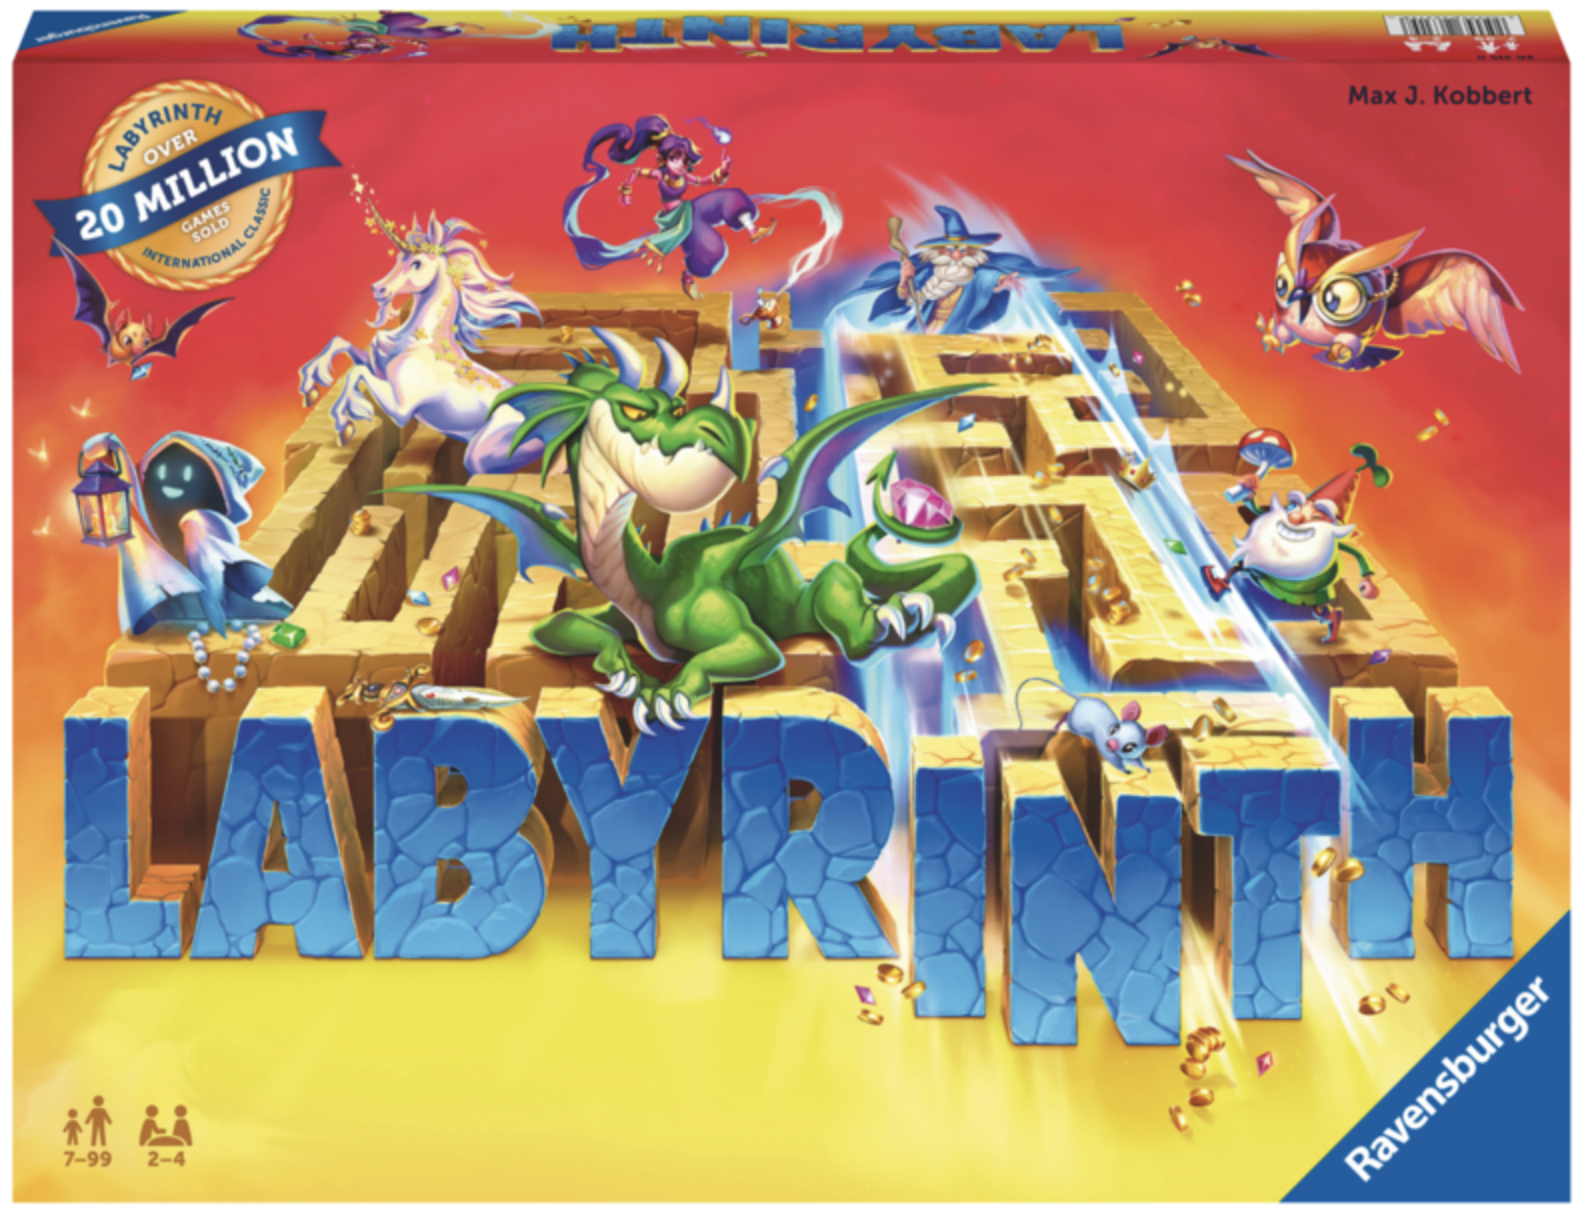 Køb Den Fortryllede Labyrint spil - Pris 211.00 kr.